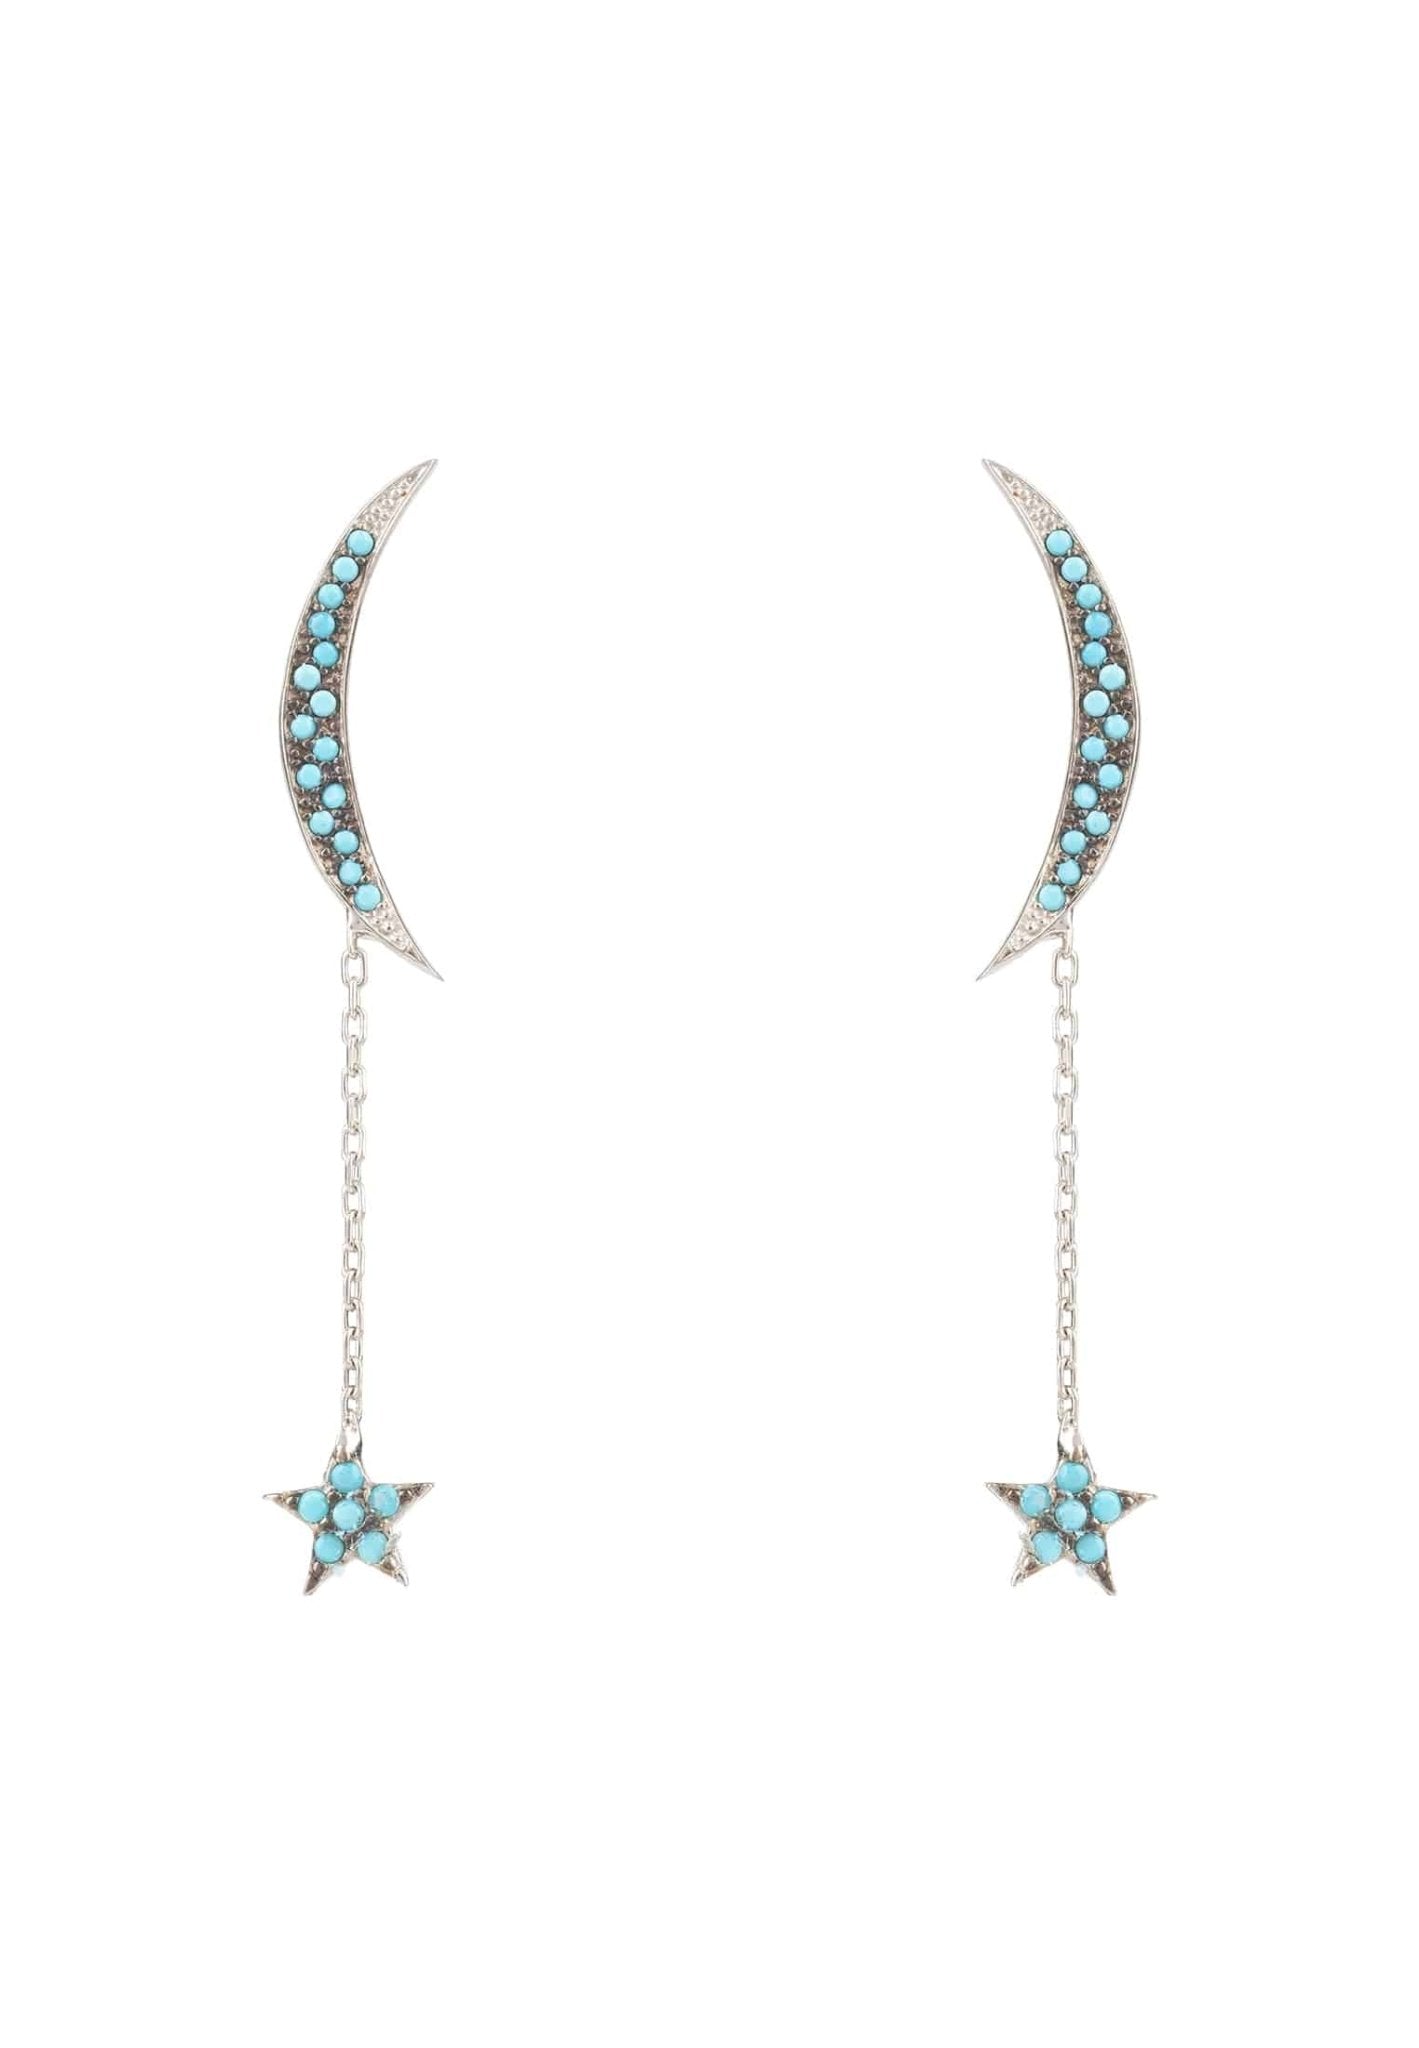 Moon & Star Drop Earrings Blue Turquoise Silver - LATELITA Earrings